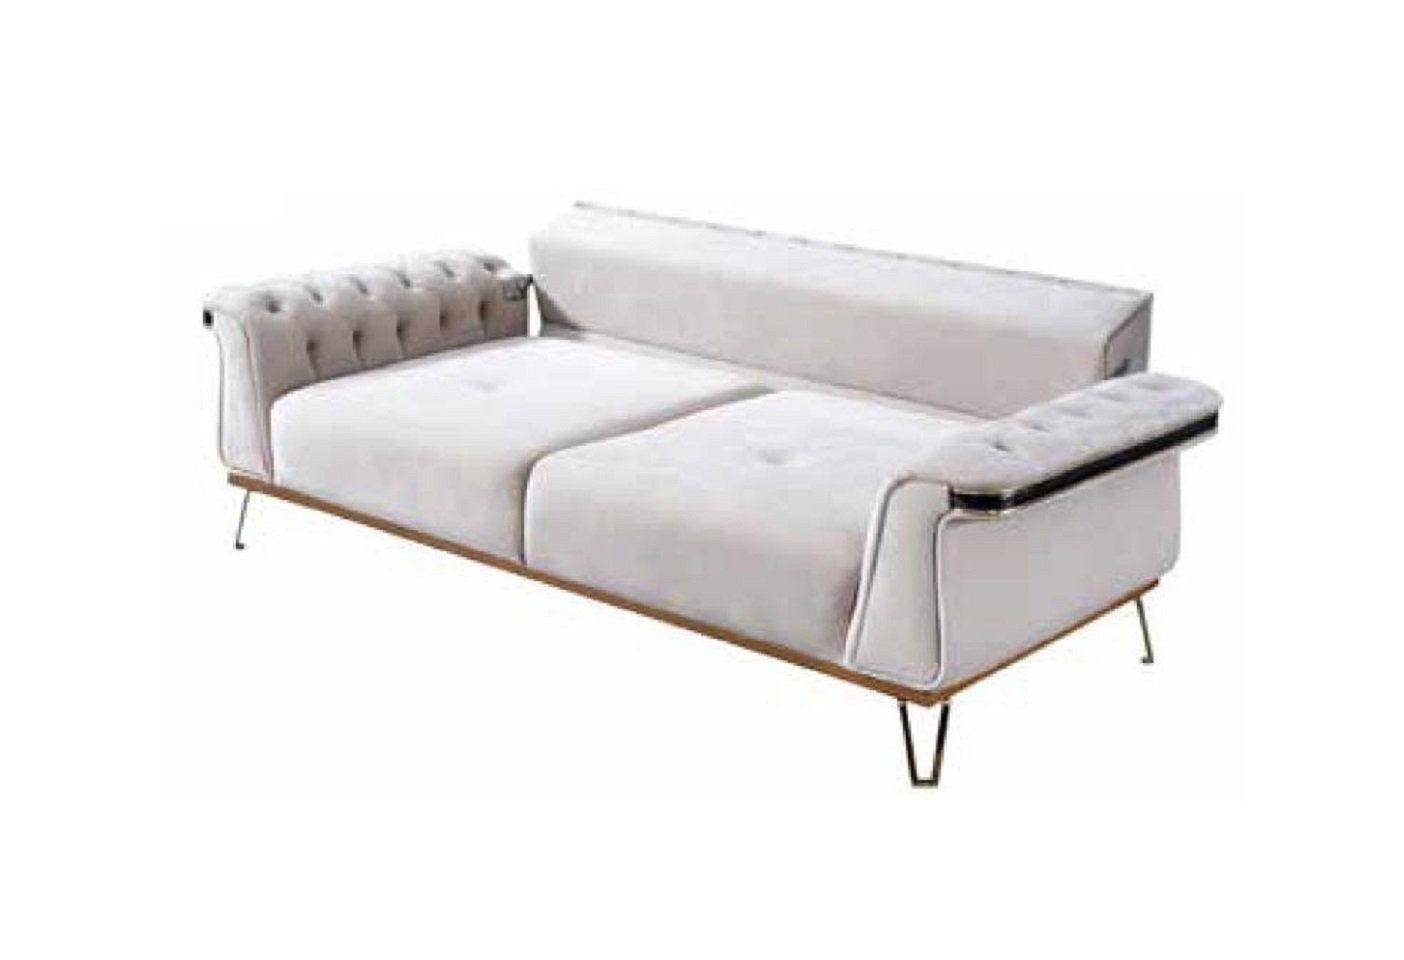 JVmoebel 3-Sitzer Dreisitzer Sofa Luxus Moderne Couch Designer Wohnzimmer Polstermöbel, 1 Teile, Made in Europa Weiß